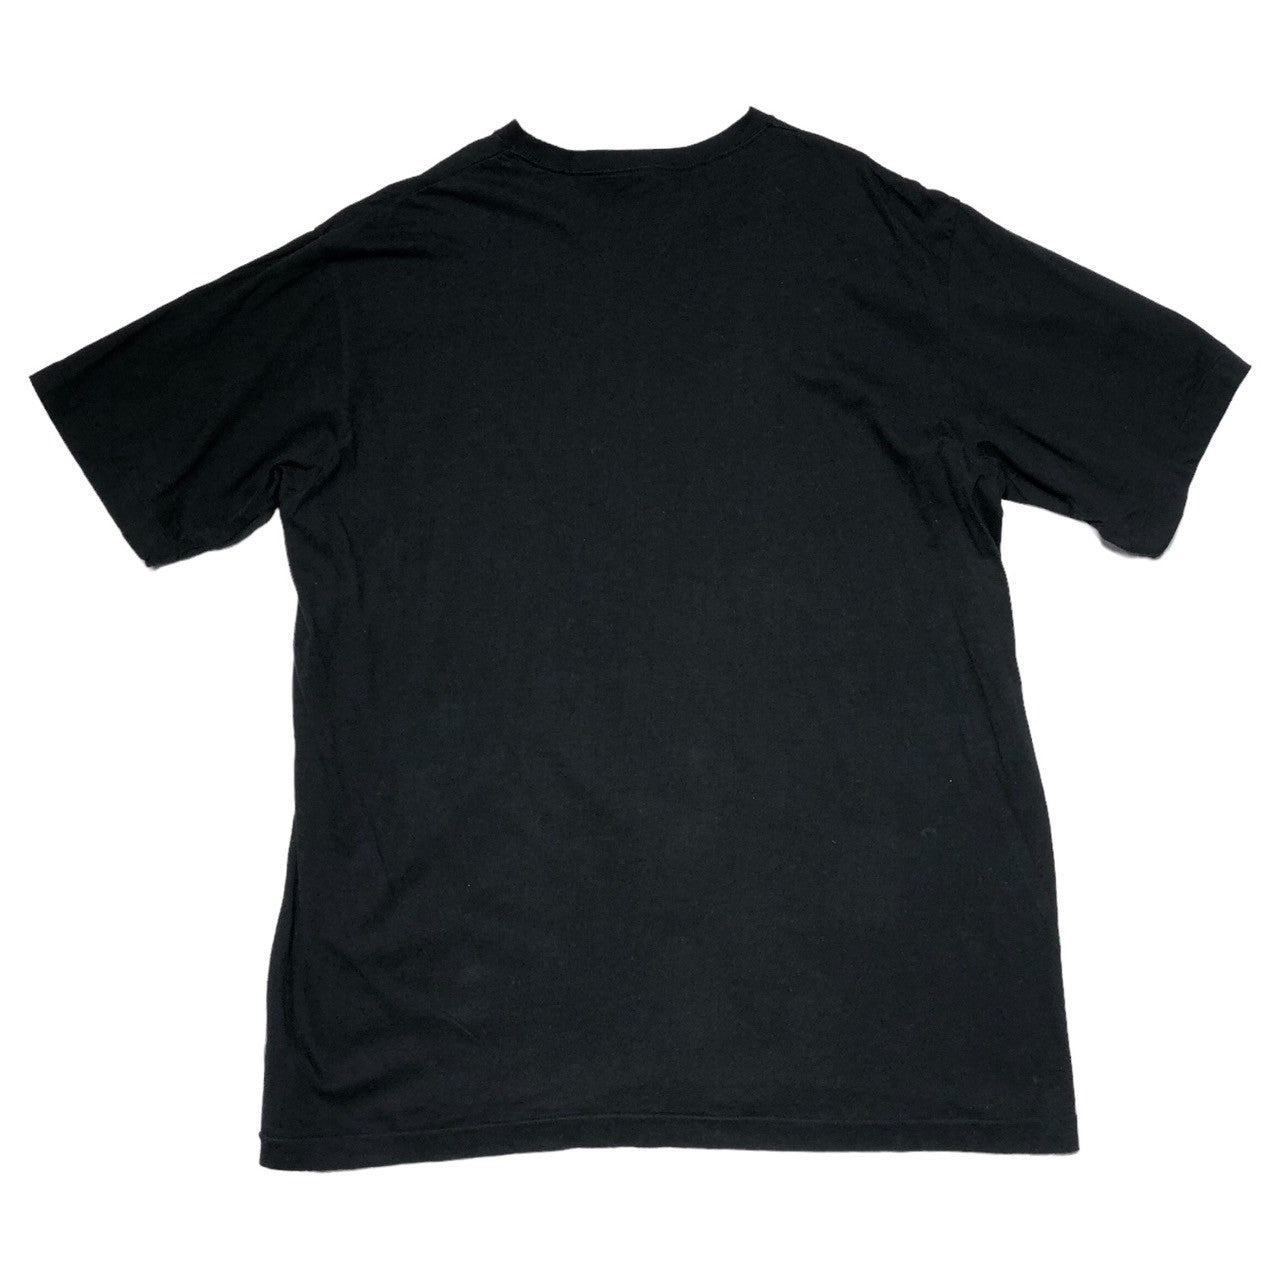 Y's for men(ワイズフォーメン) 90's Vintage one point logo short sleeve T-shirt ヴィンテージ ワンポイントロゴ ショートスリーブ Tシャツ 90年代 MR-T01-001 表記なし(FREE) ブラック×ホワイト